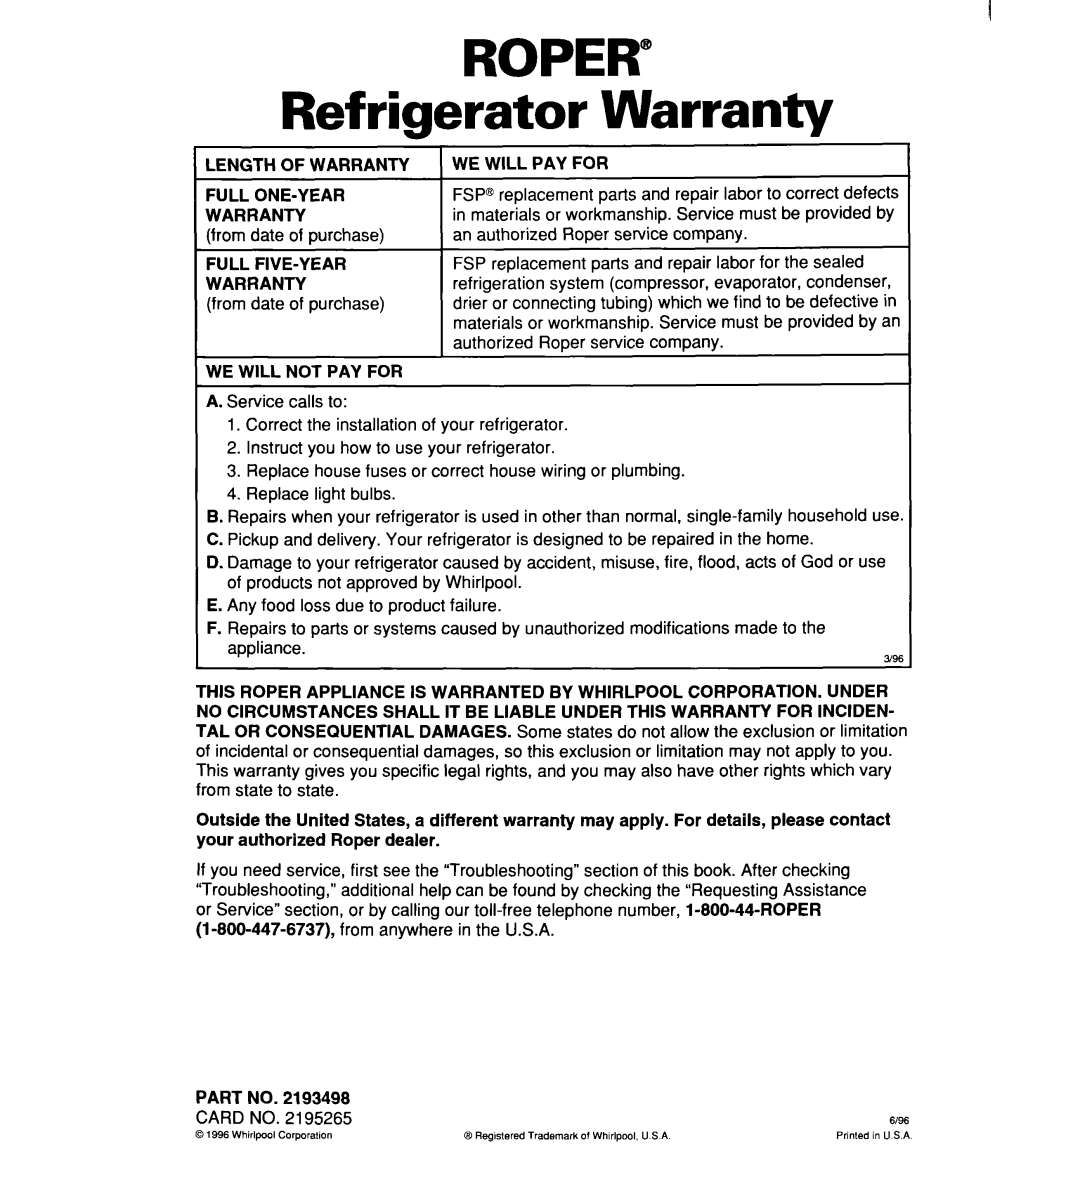 Whirlpool RT16DKXDN03 warranty Roper, Warranty, Refrigerator 